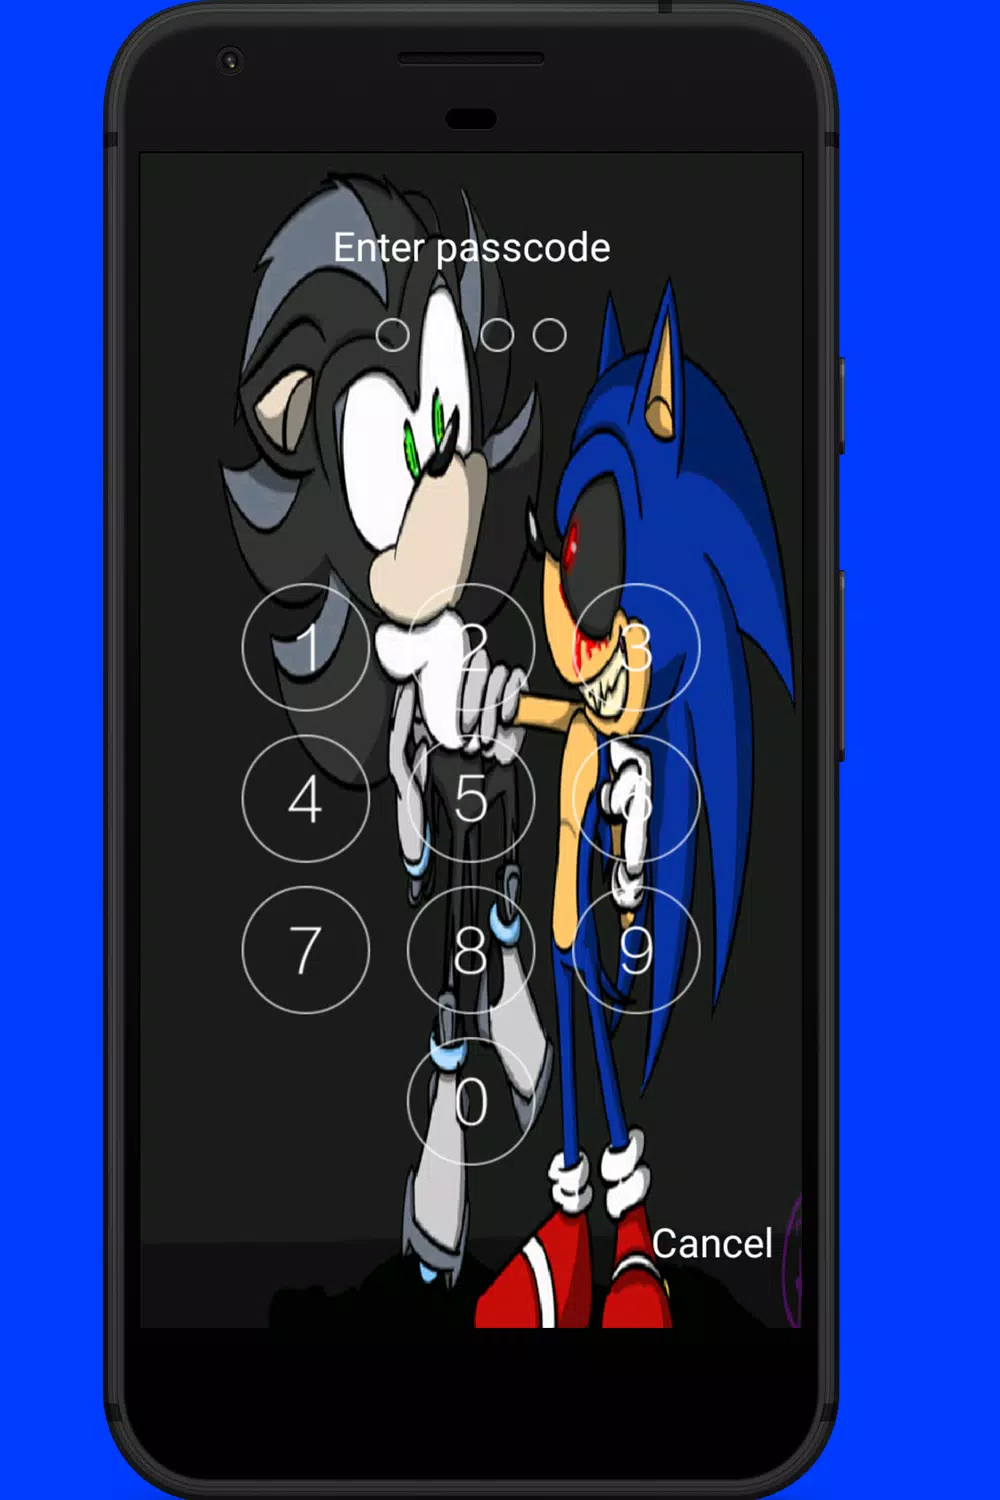 Sonic.Exe APK 1.0.5 Descargar gratis para Android - Ultima versión